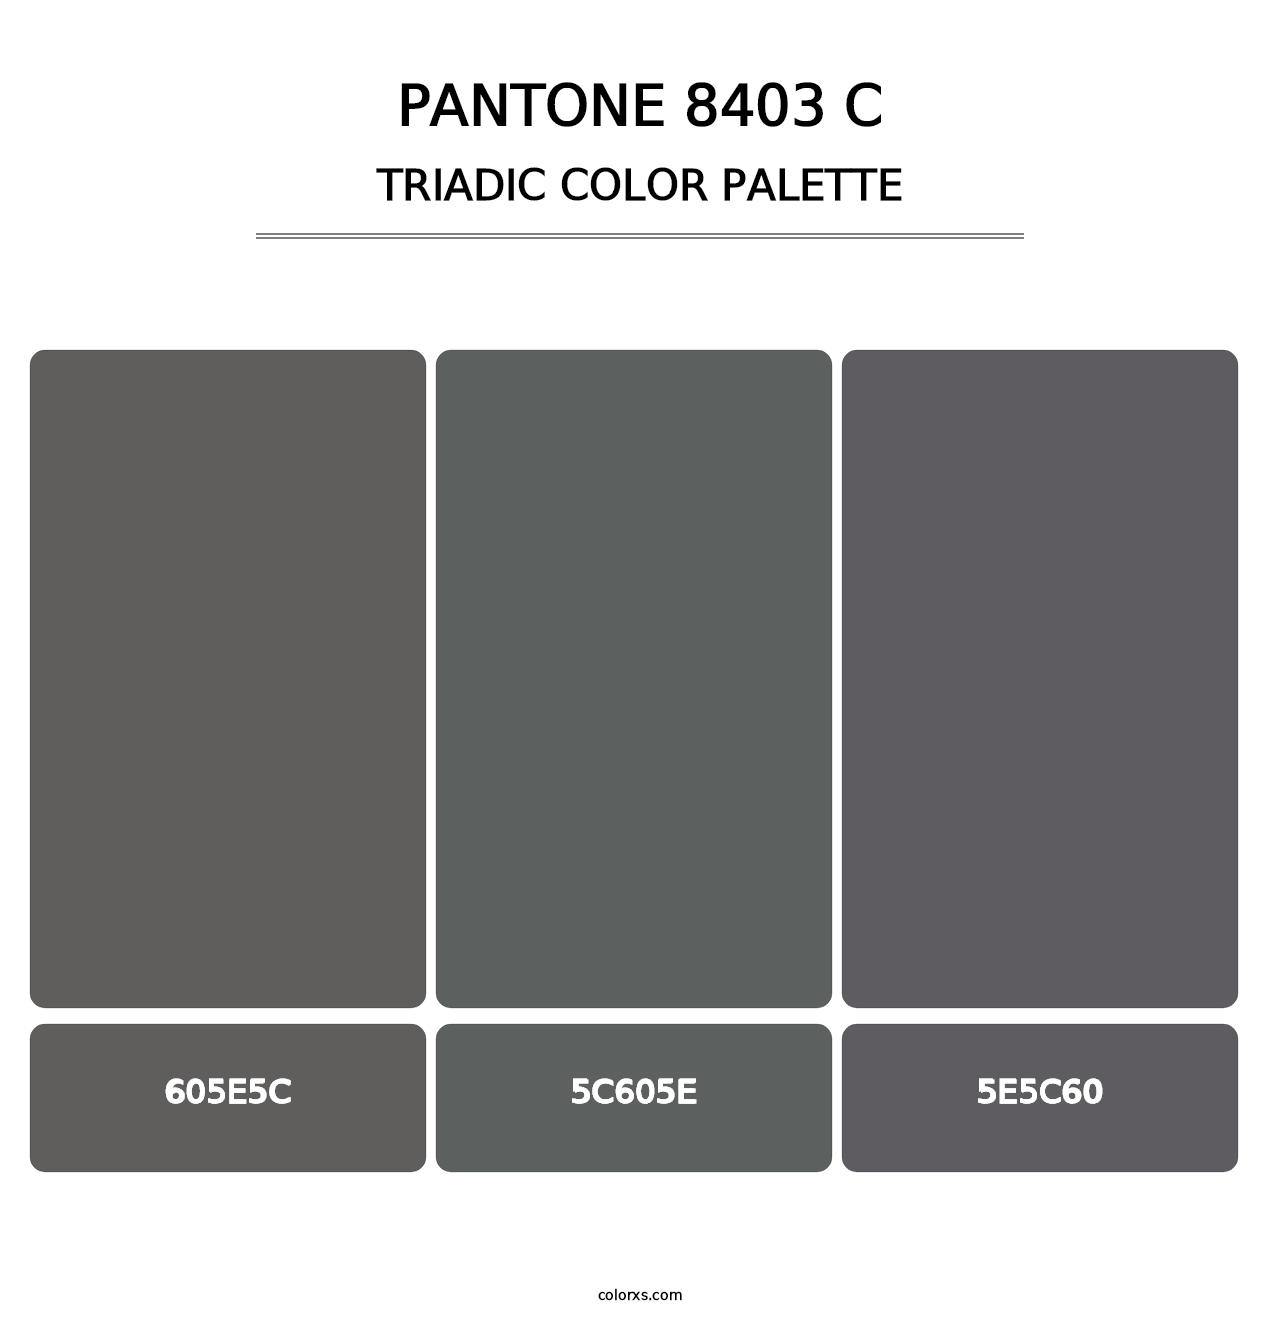 PANTONE 8403 C - Triadic Color Palette